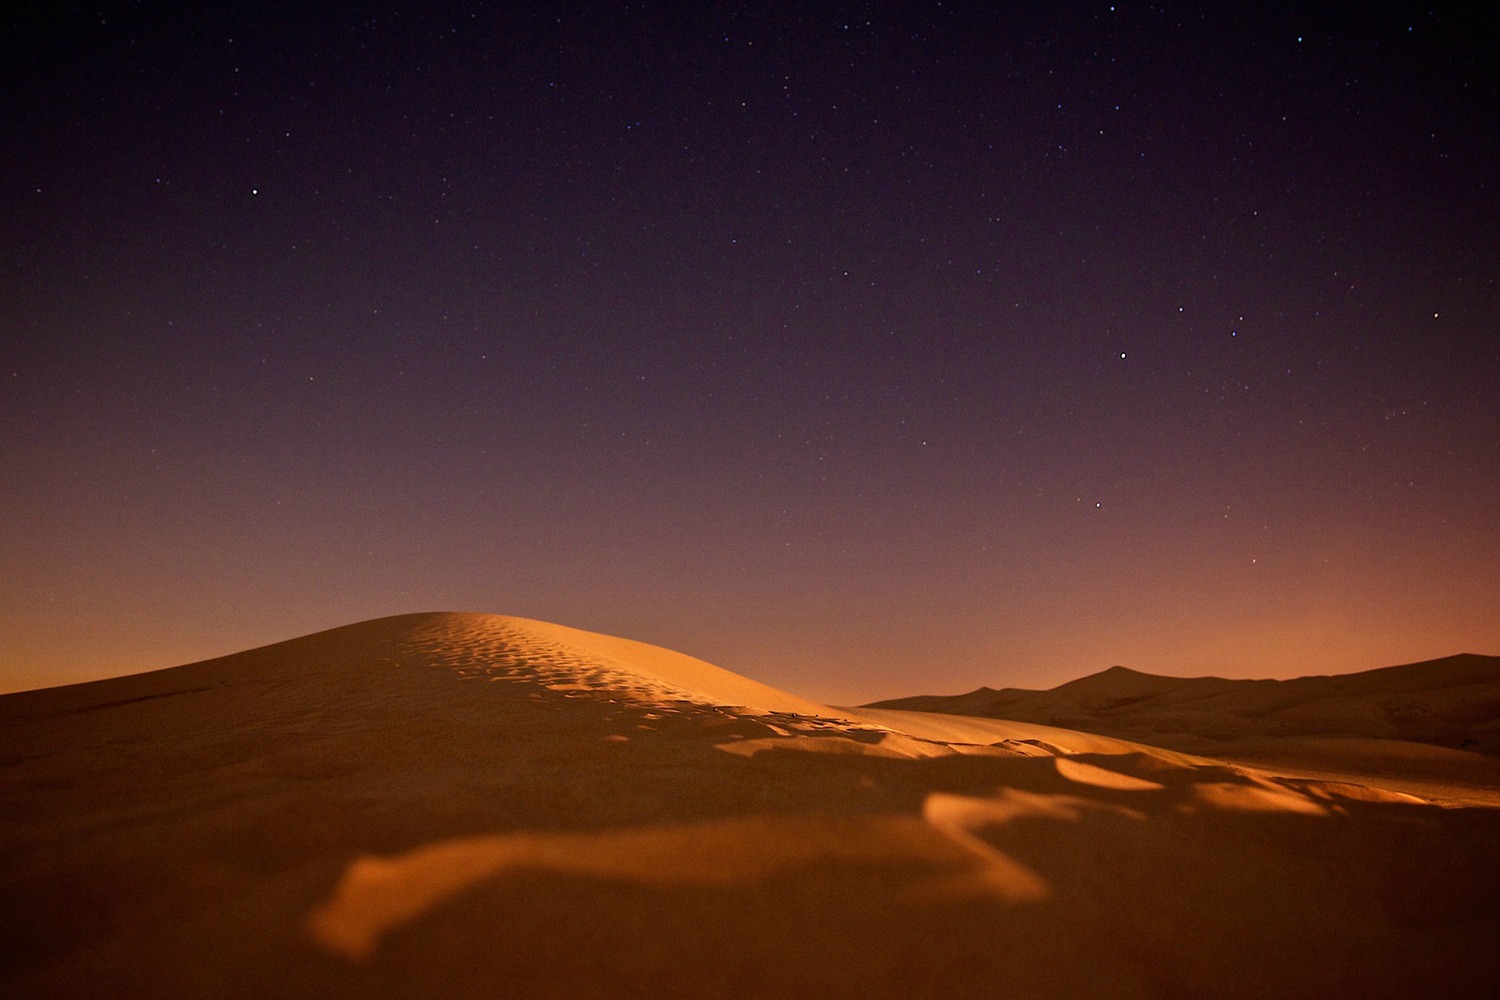 desert at night